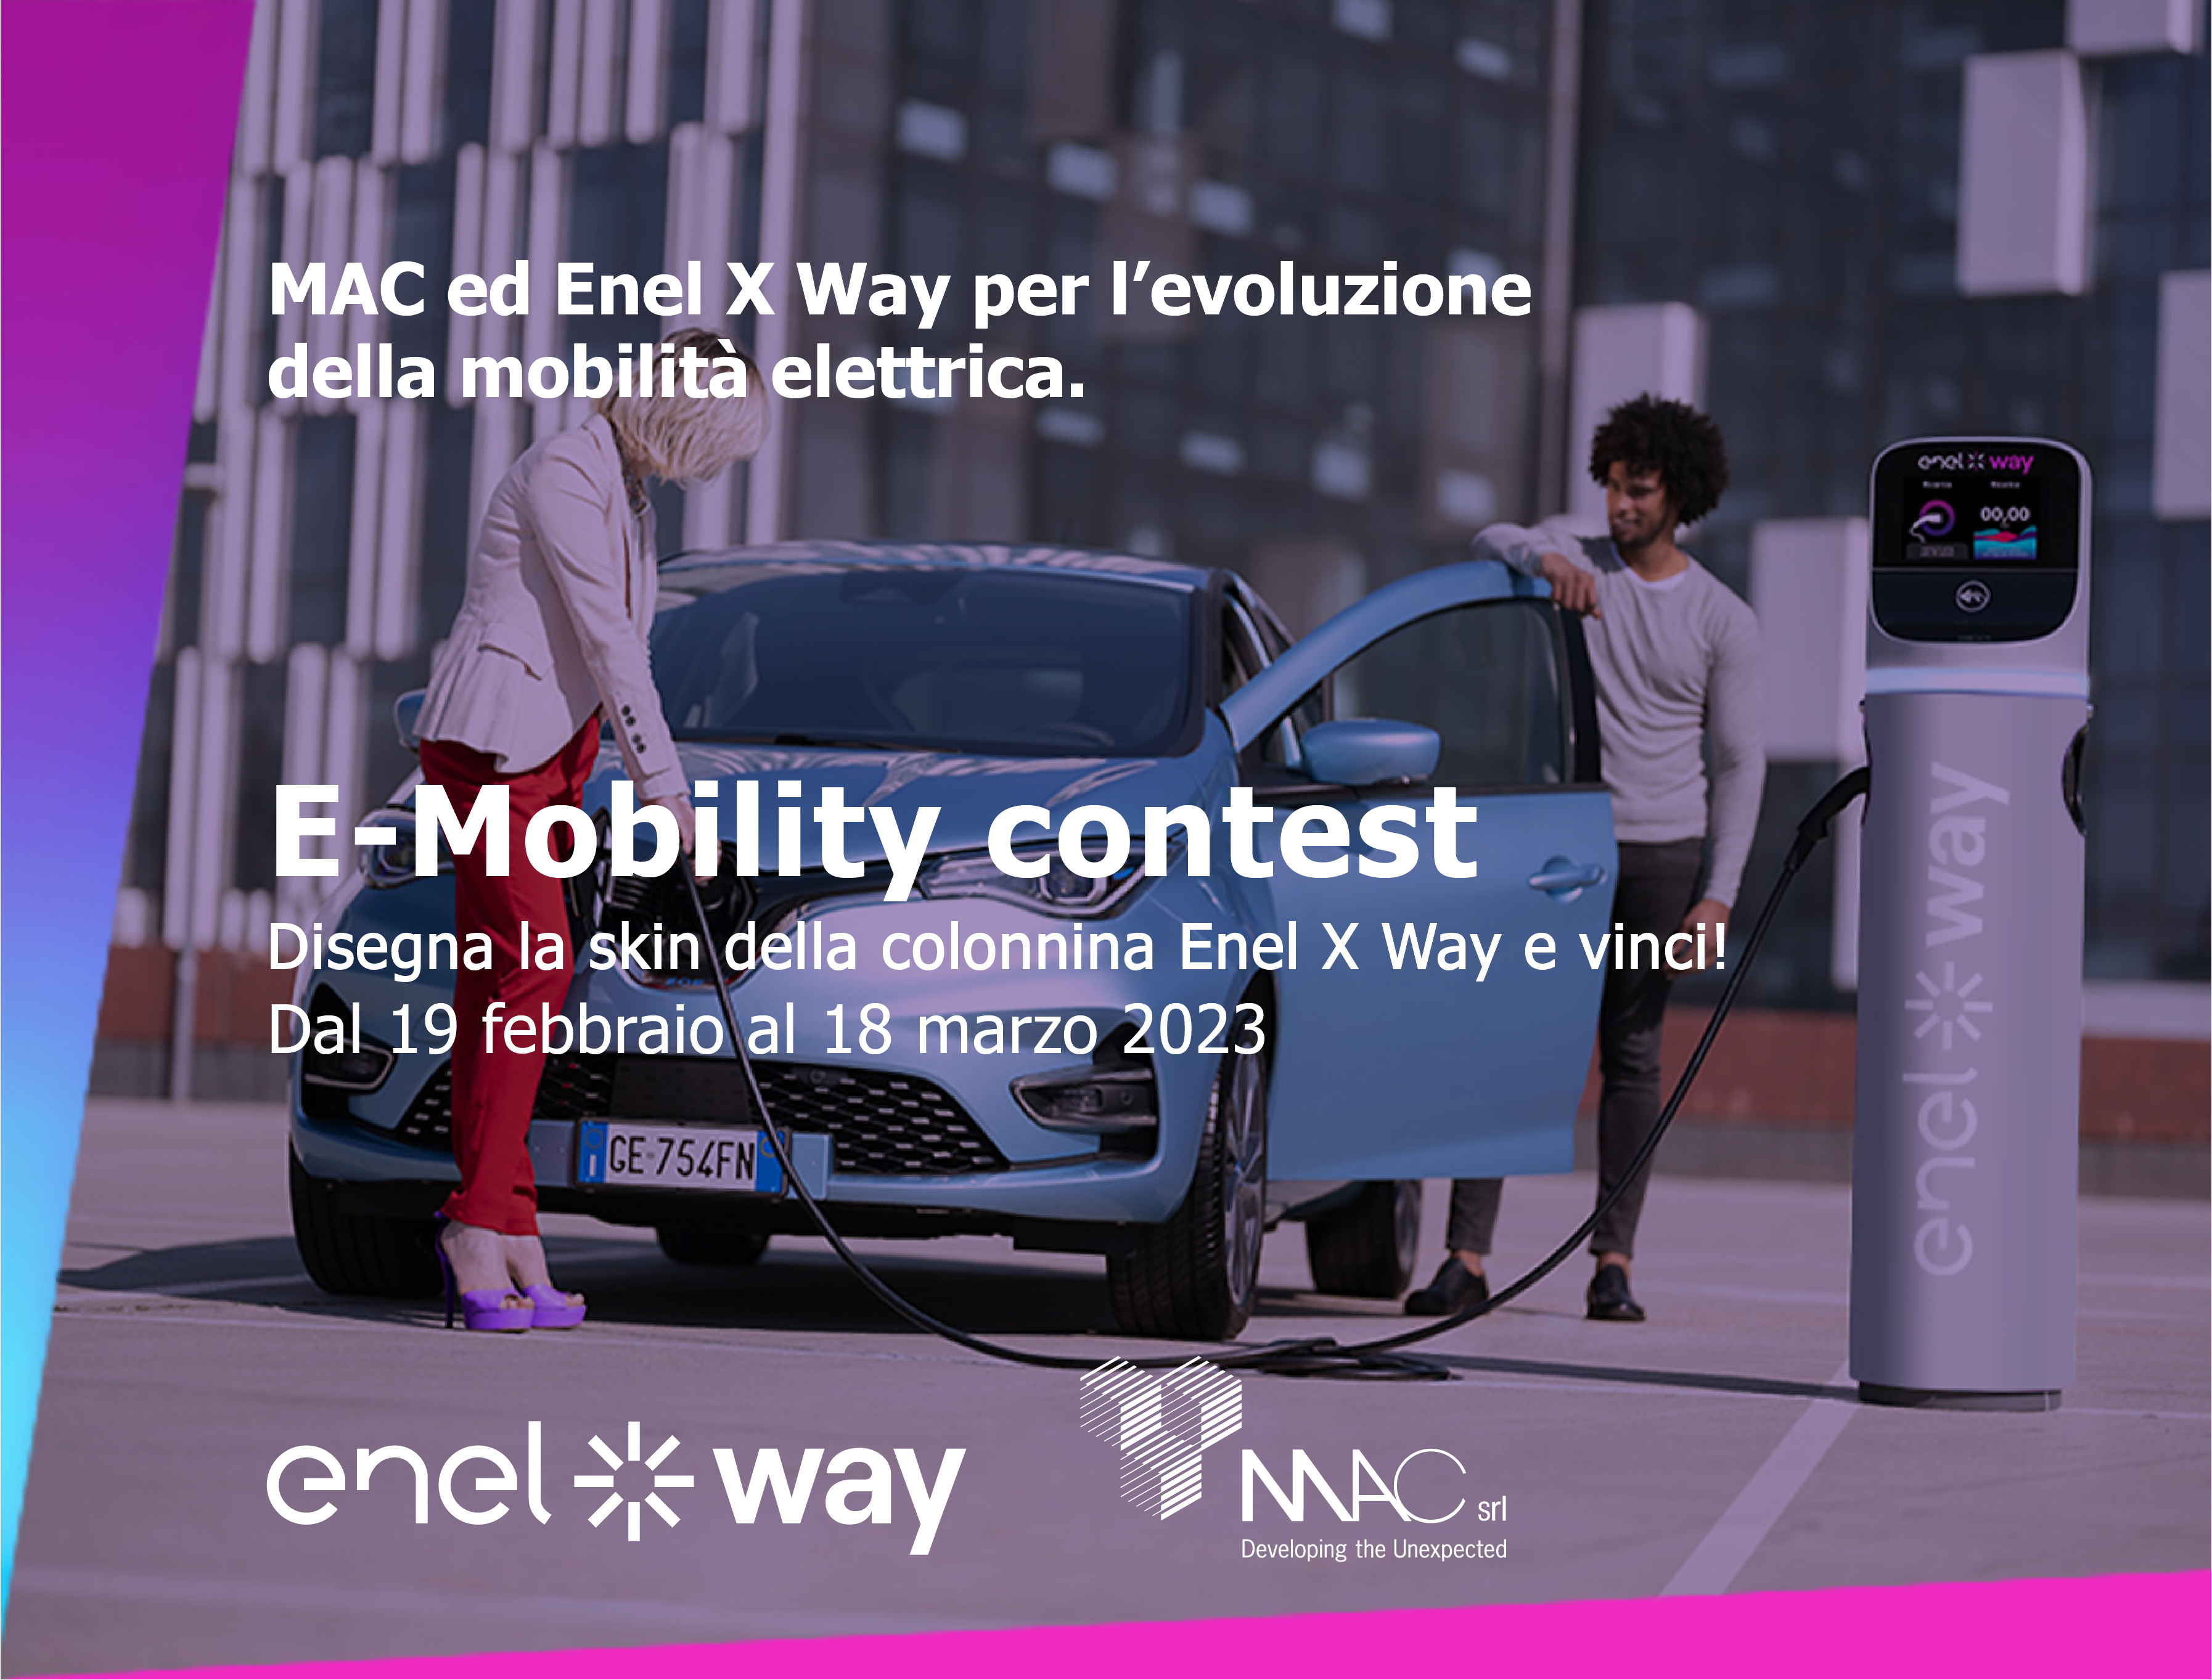 E-Mobility Contest: Disegna la skin della colonnina Enel X Way e vinci!